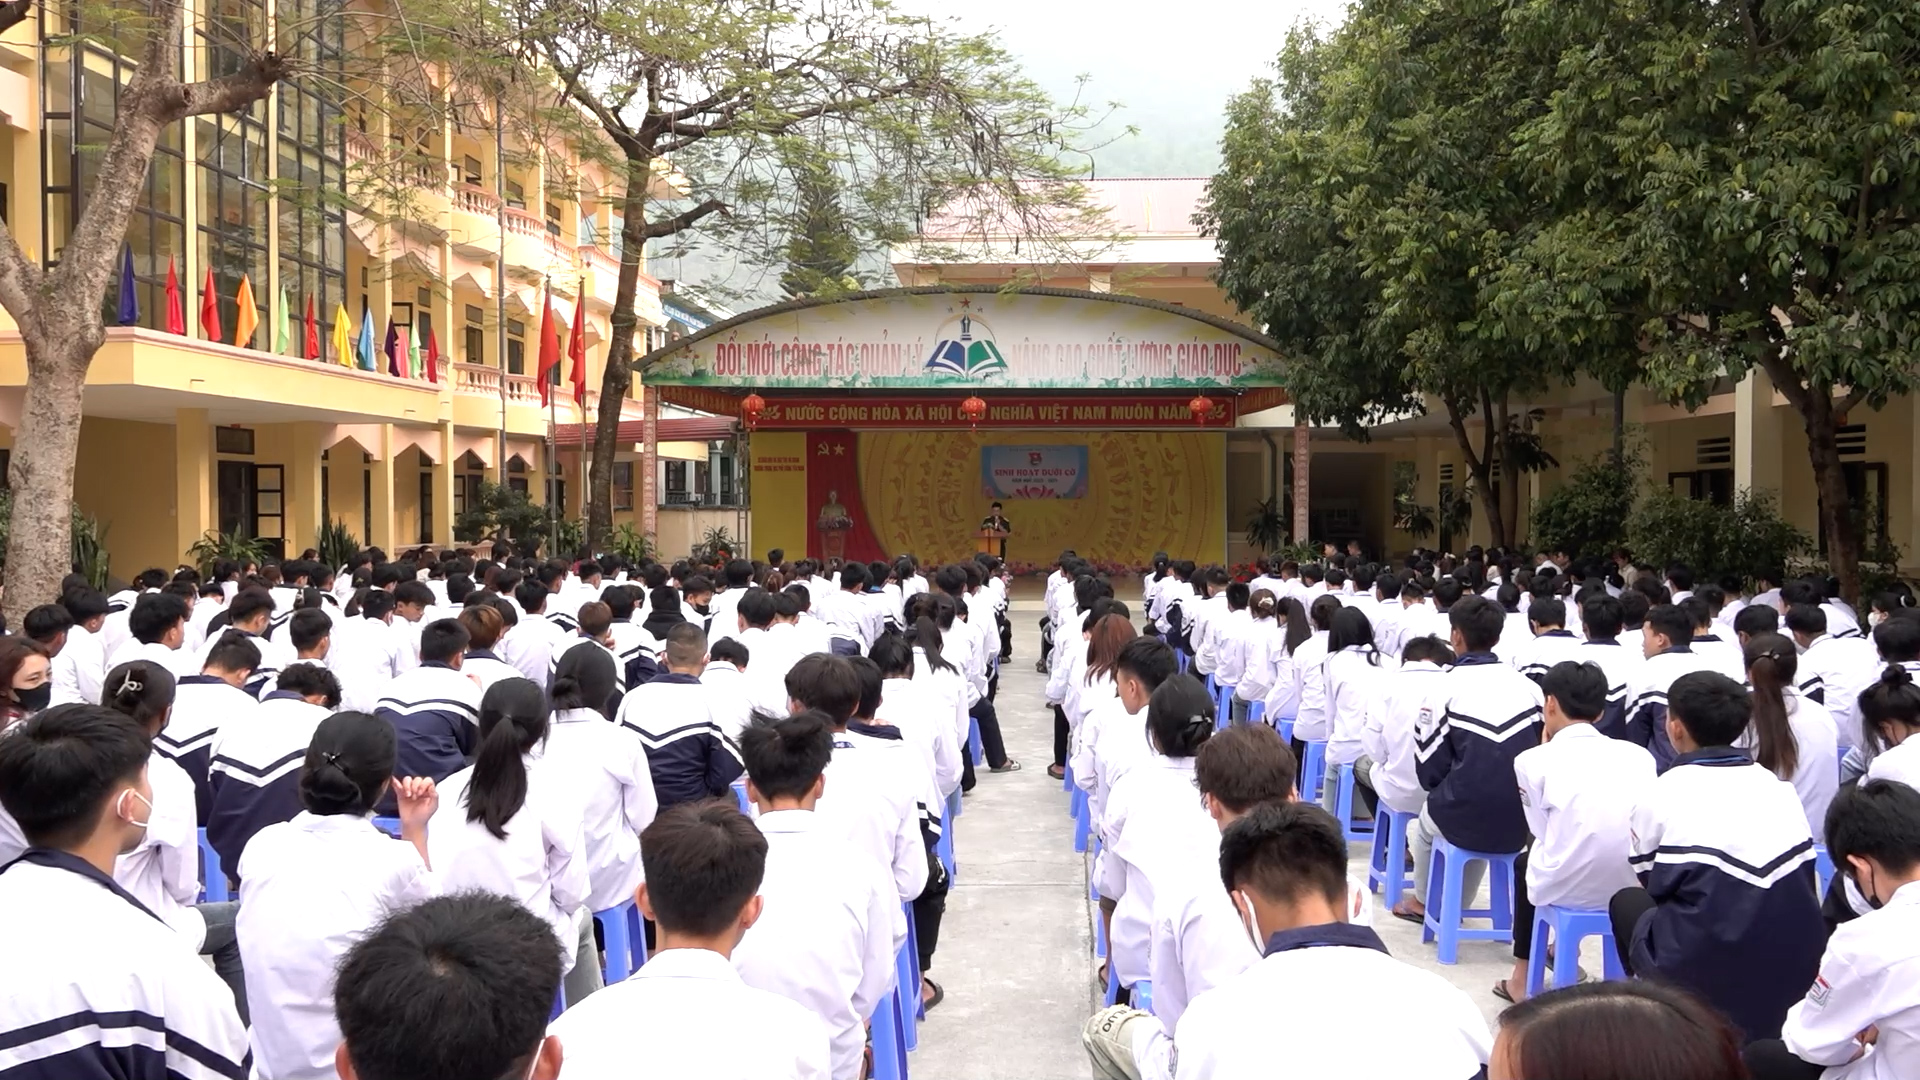 Ban chỉ huy quân sự huyện Yên Minh tuyên truyền về tuyển sinh quân sự